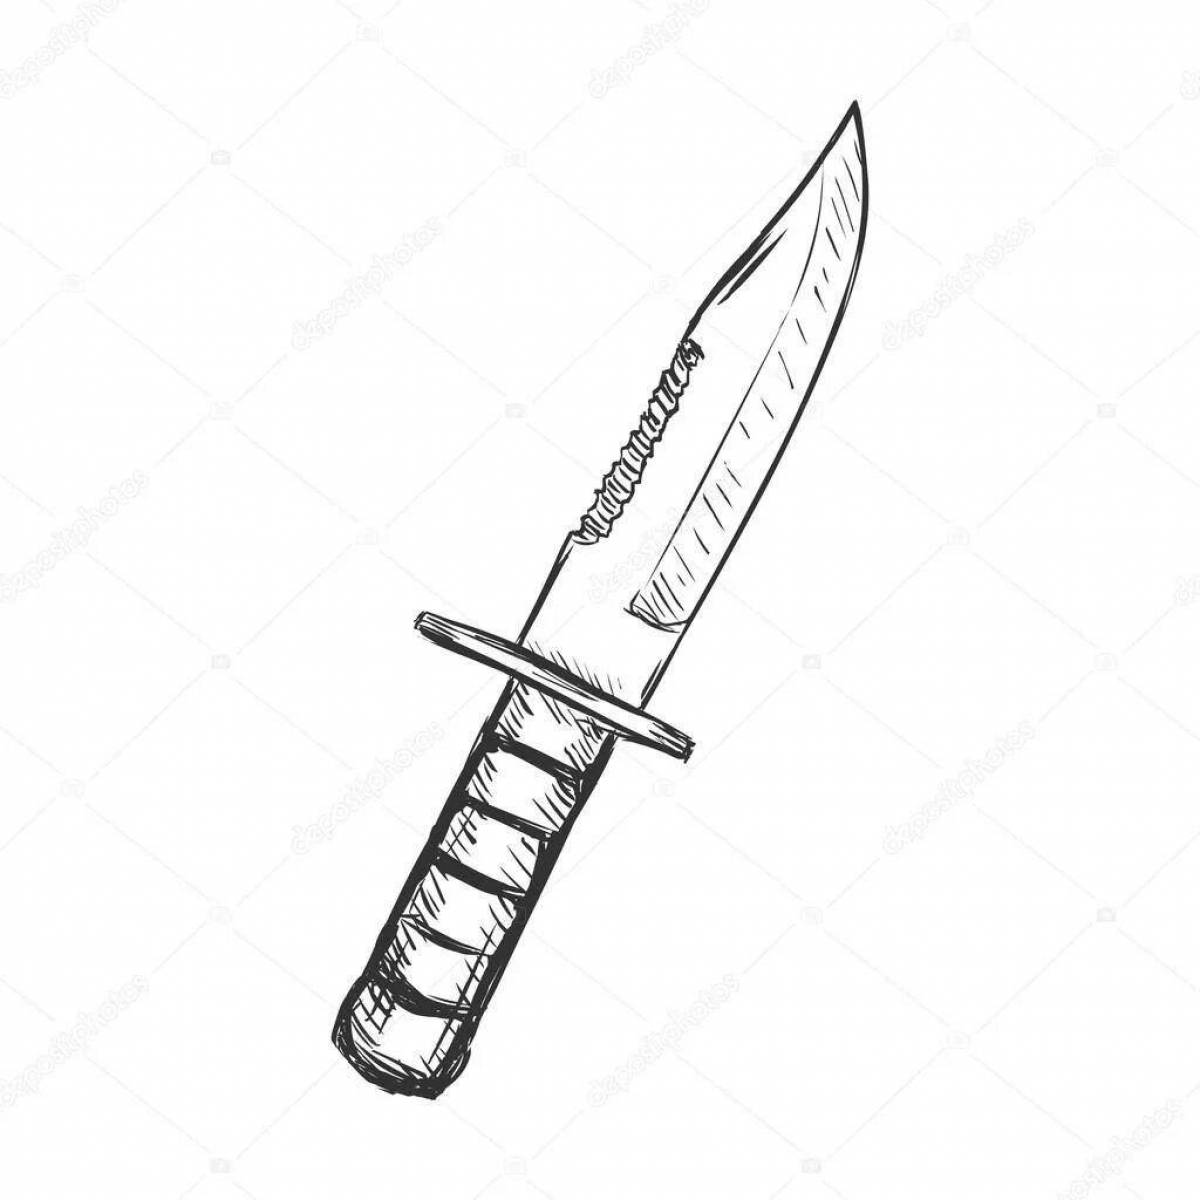 Подробная раскраска подставки для 2 ножей